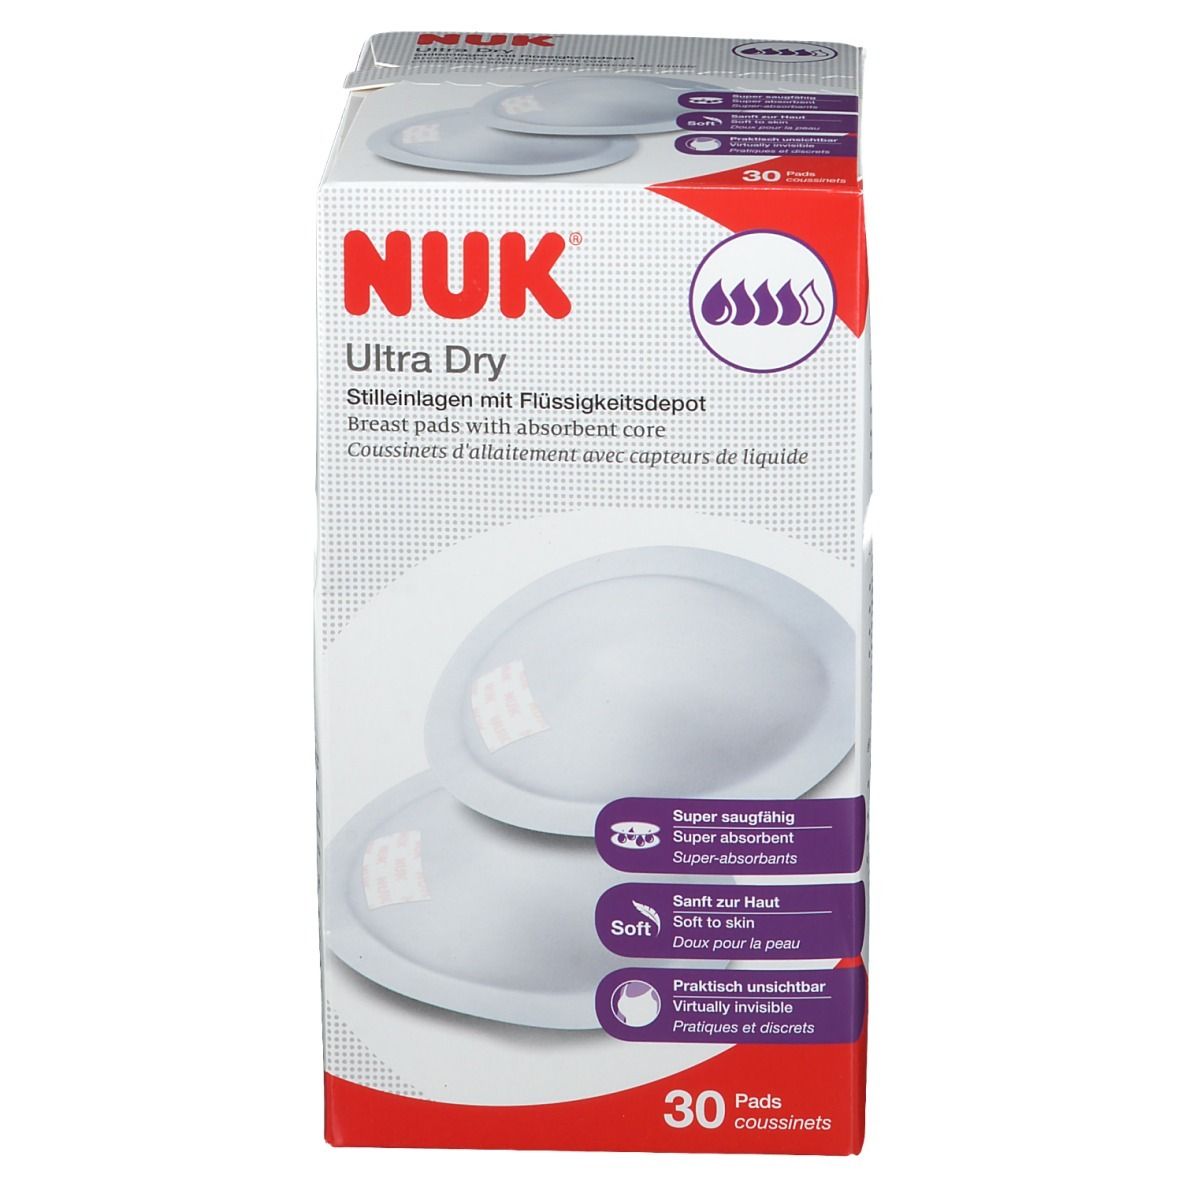 NUK® Ultra Dry Stilleinlagen 30 Pads